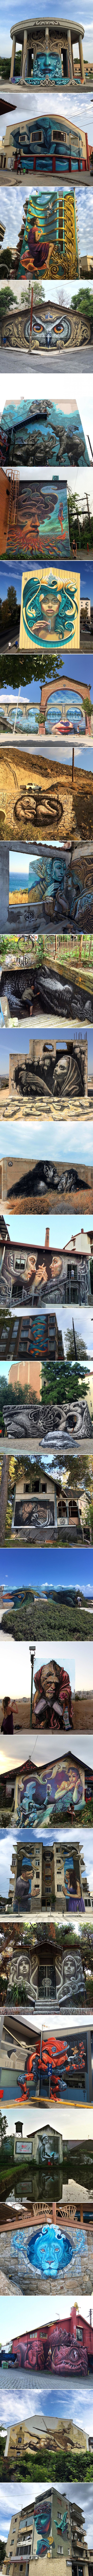 Ulični umjetnik oslikava murale diljem Europe, čak i najdosadnije zgrade pretvara u remek djela